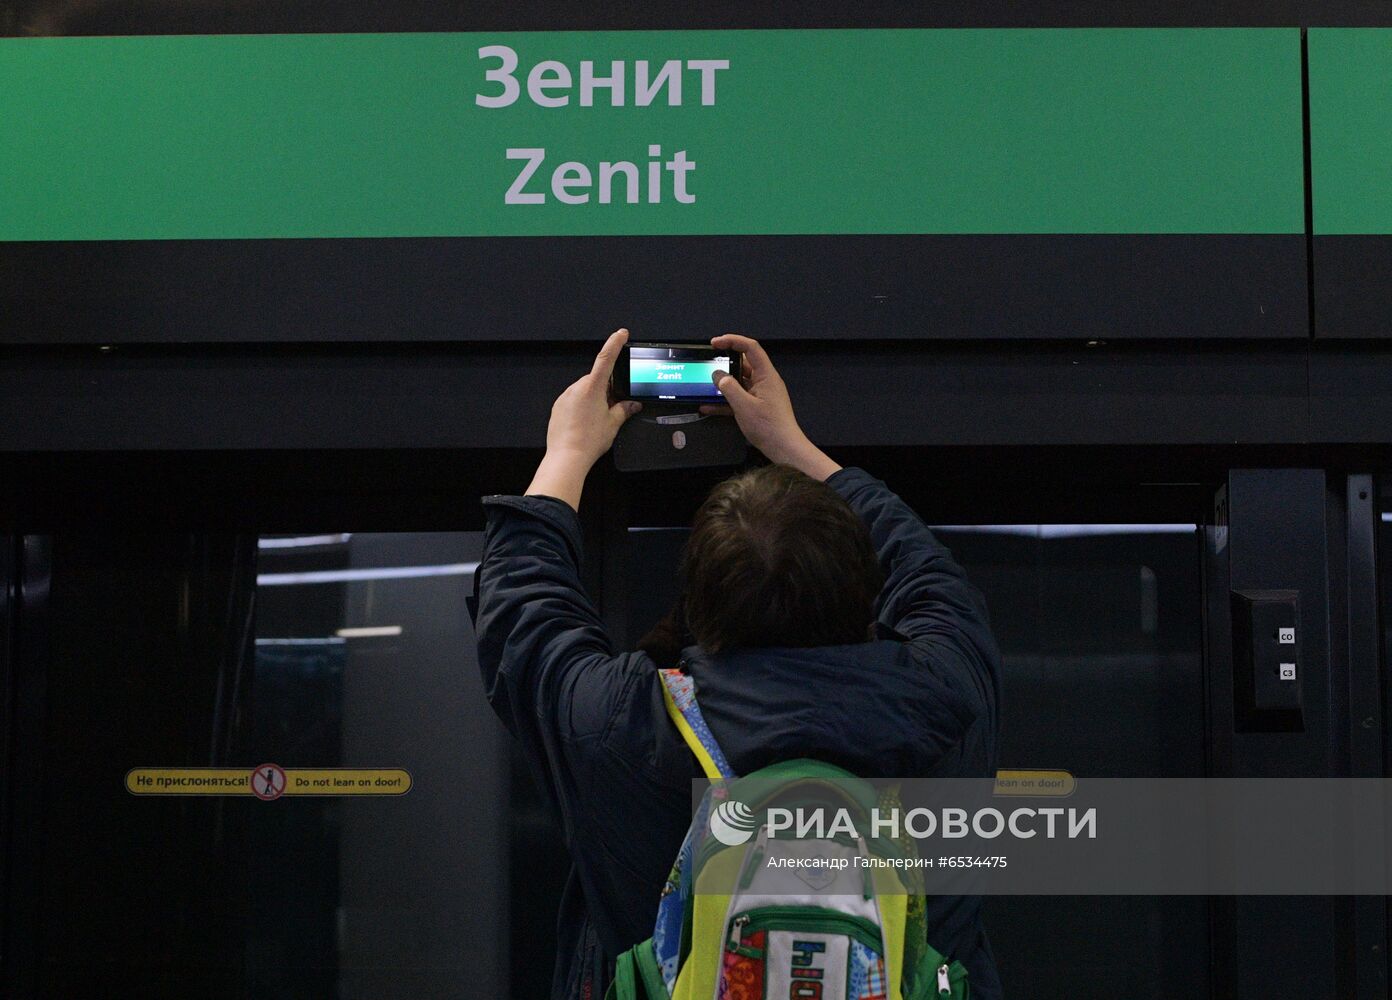 Открытие станции метро "Зенит" в Санкт-Петербурге